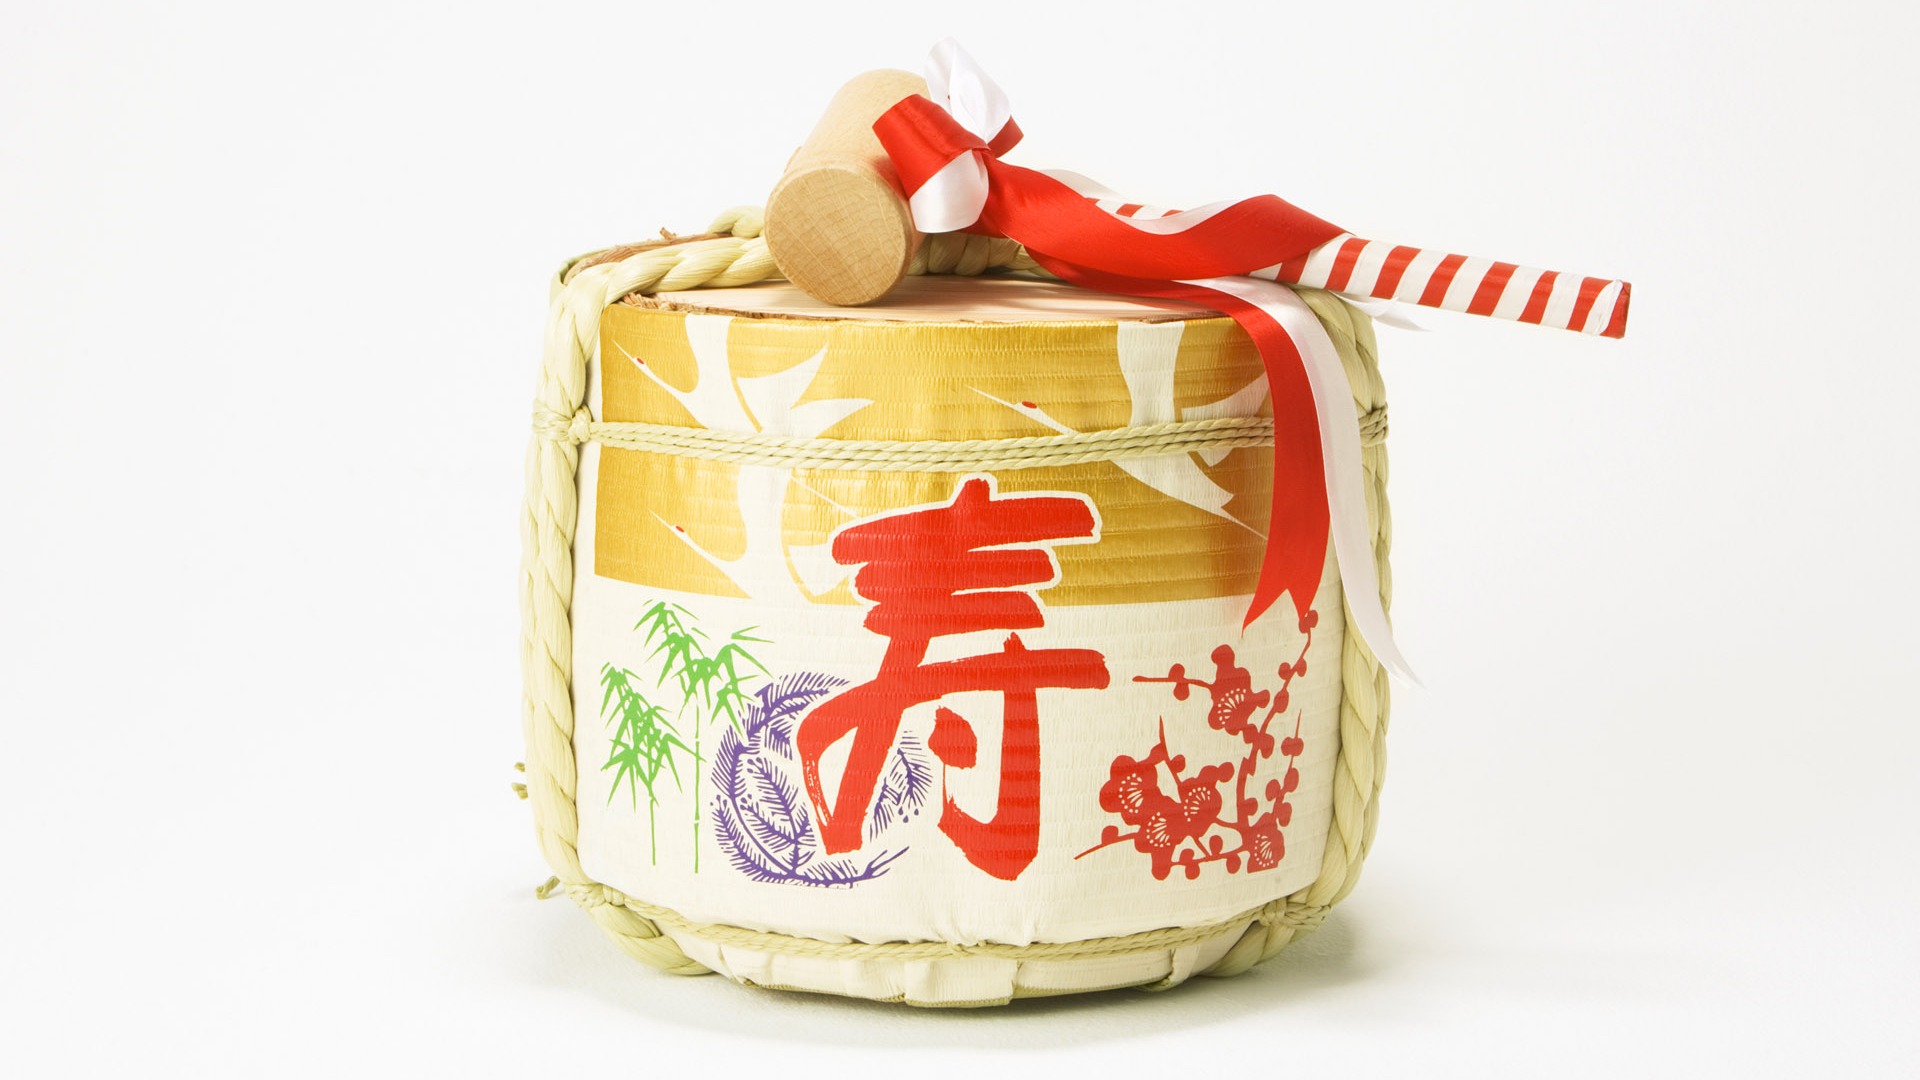 Fondos de año nuevo japonés Cultura (2) #12 - 1920x1080